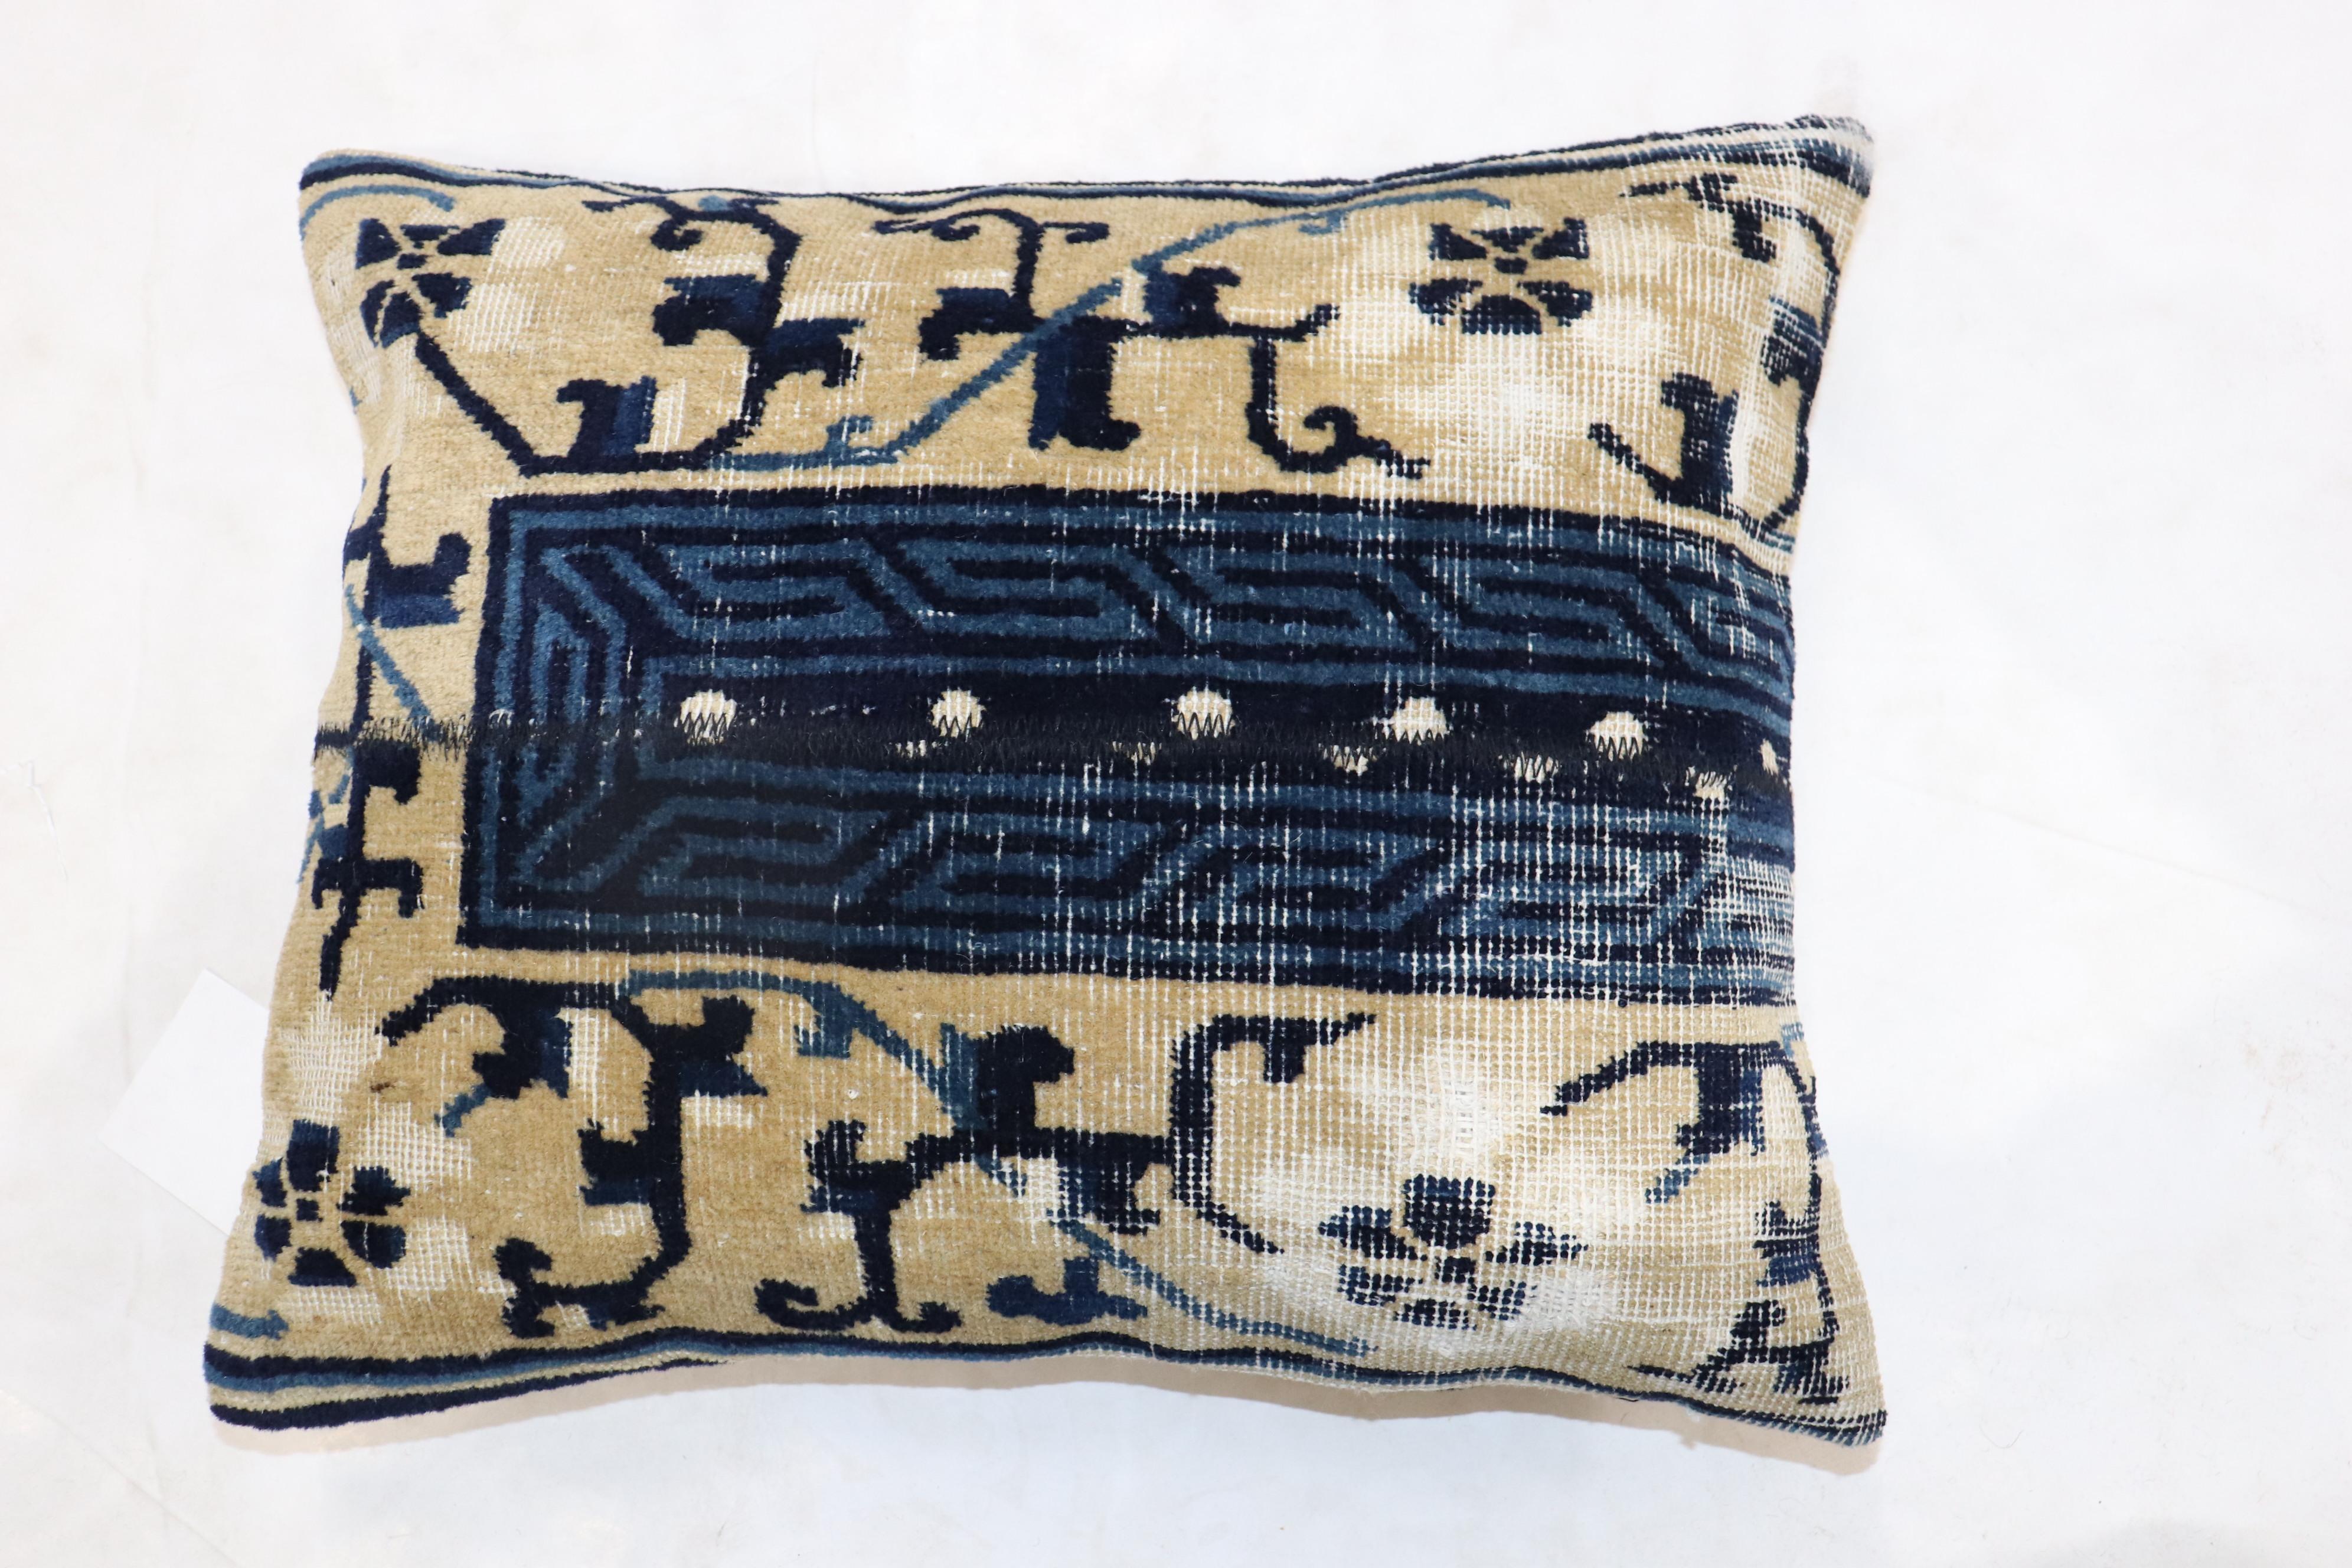 Kissen aus einem chinesischen blauen Peking-Teppich aus dem frühen 20. Jahrhundert.

Maße: 16'' x 19''.